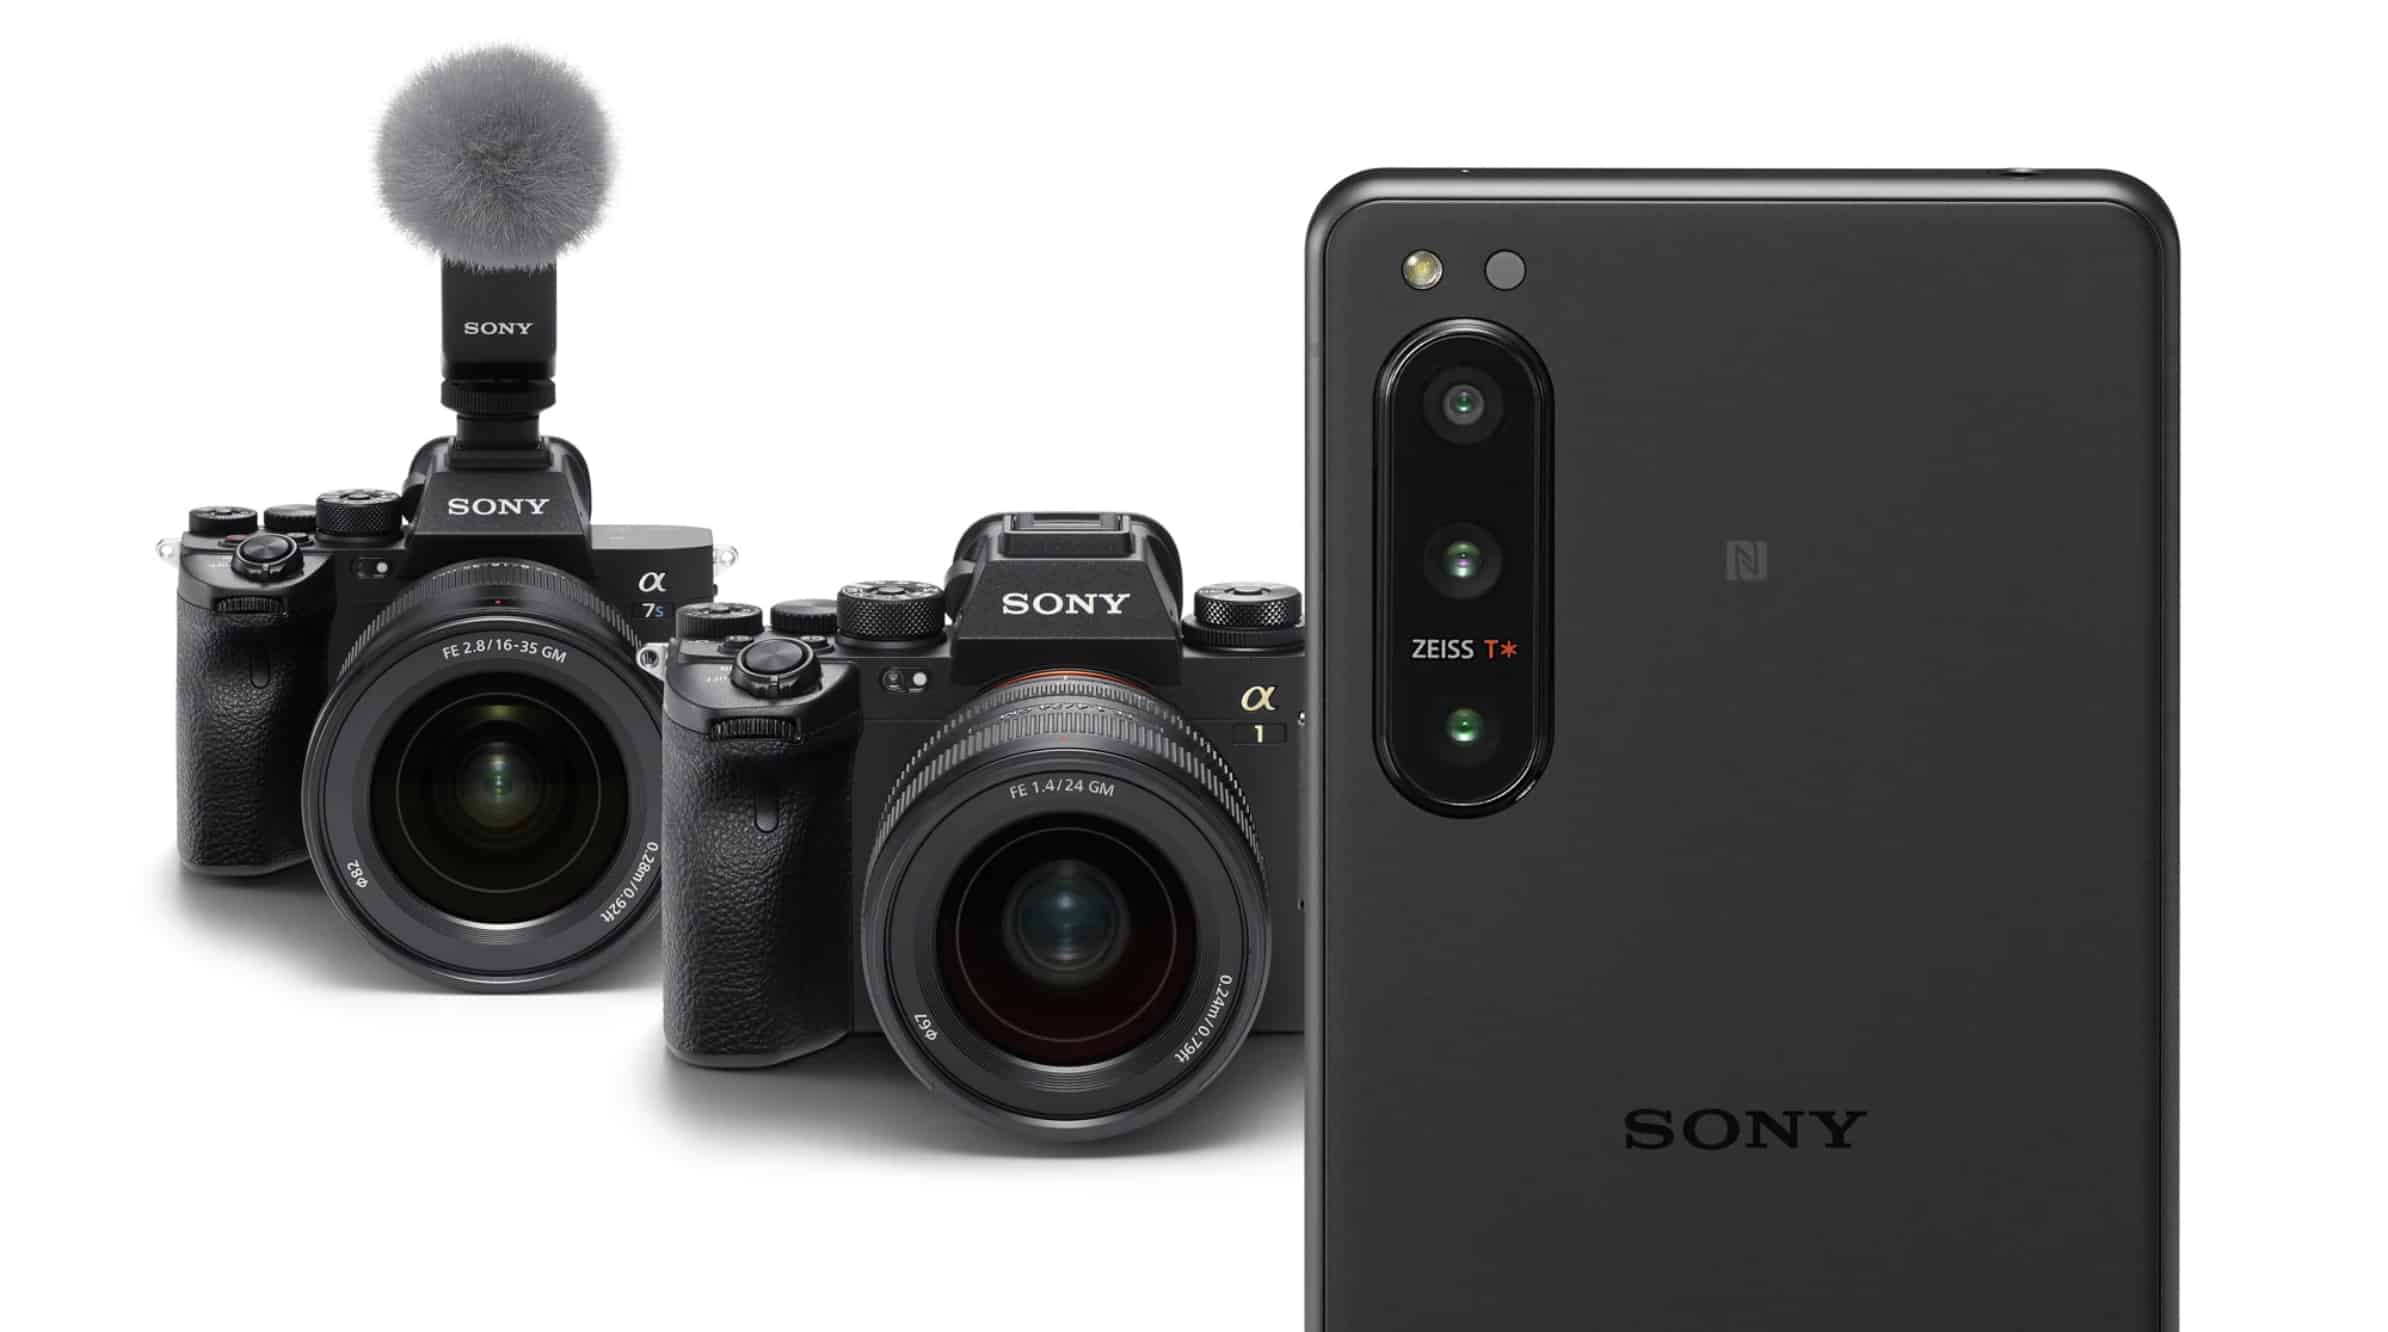 Sony ra mắt điện thoại Xperia 5 IV với khả năng quay video 4K120P